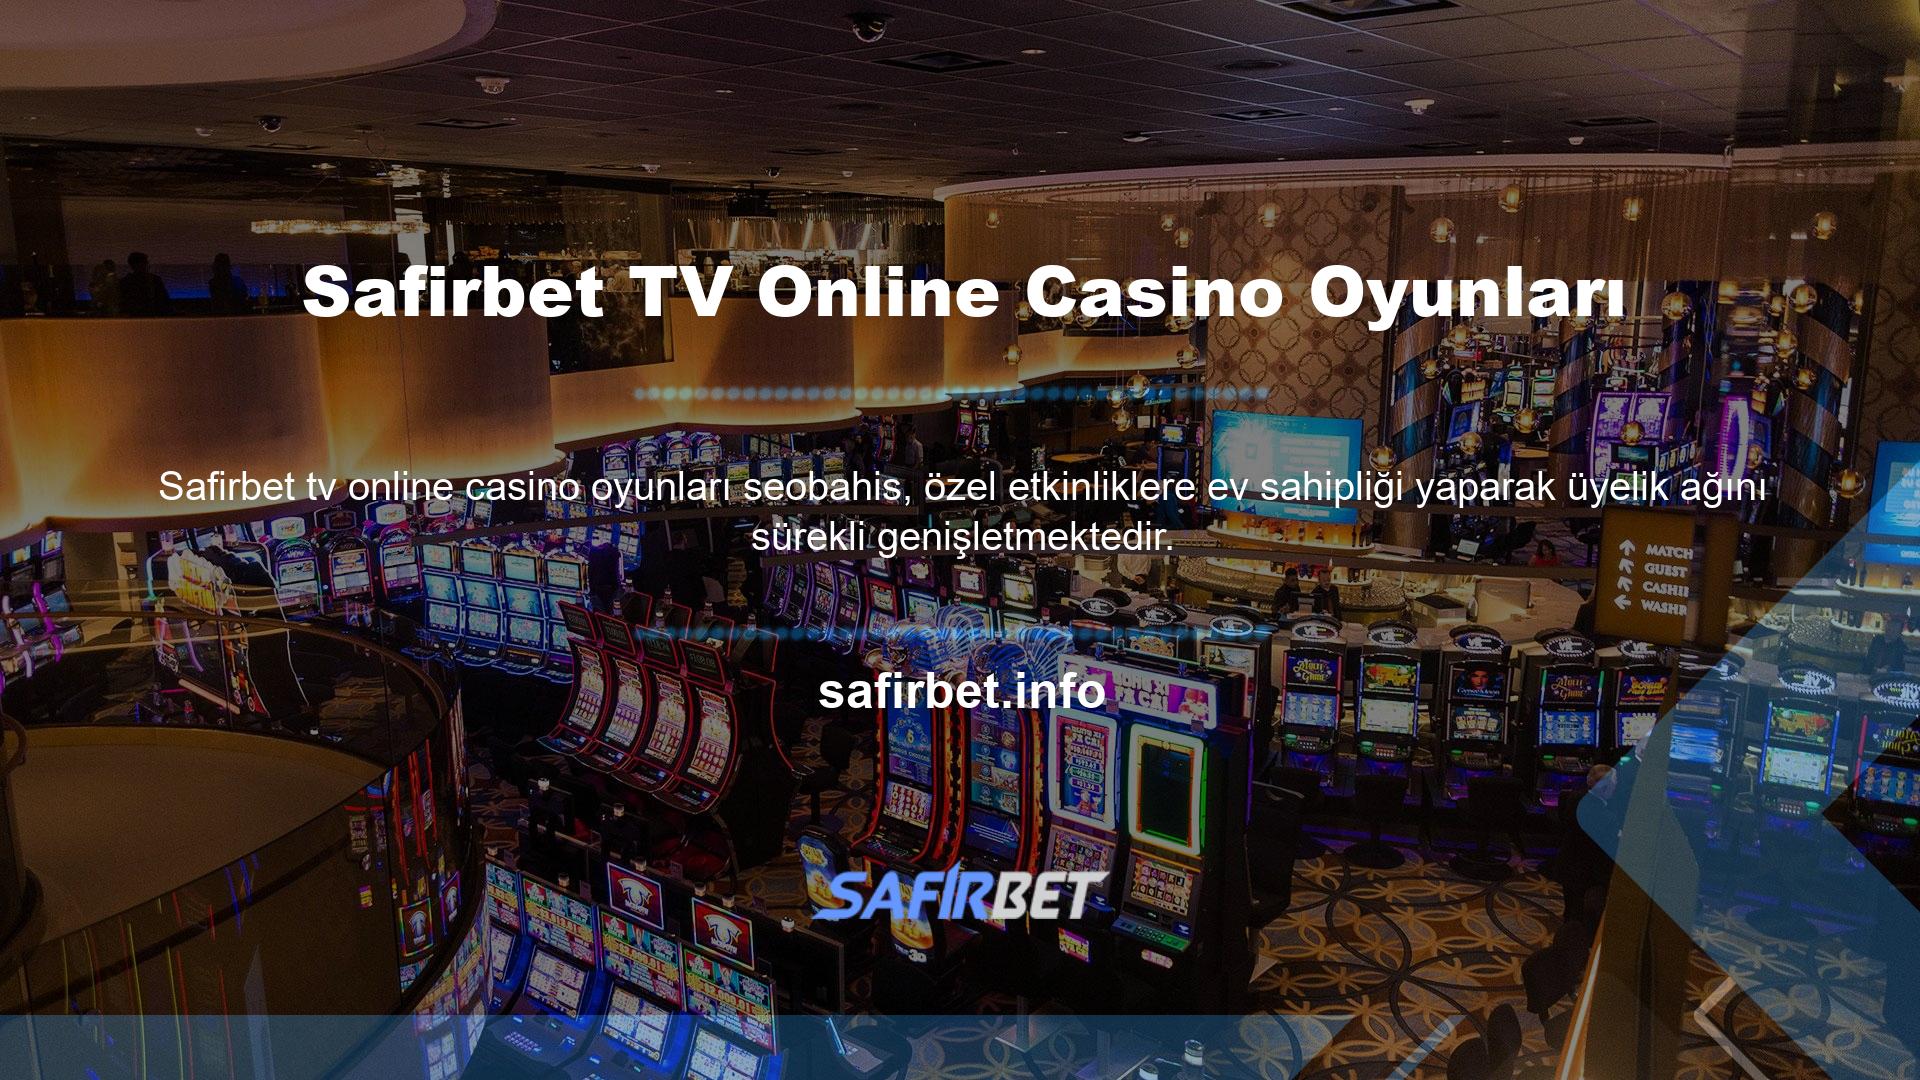 Bu sitenin değerli üyelerine sunduğu seçeneklerden biri de Safirbet TV Online Casino Oyun TV'dir